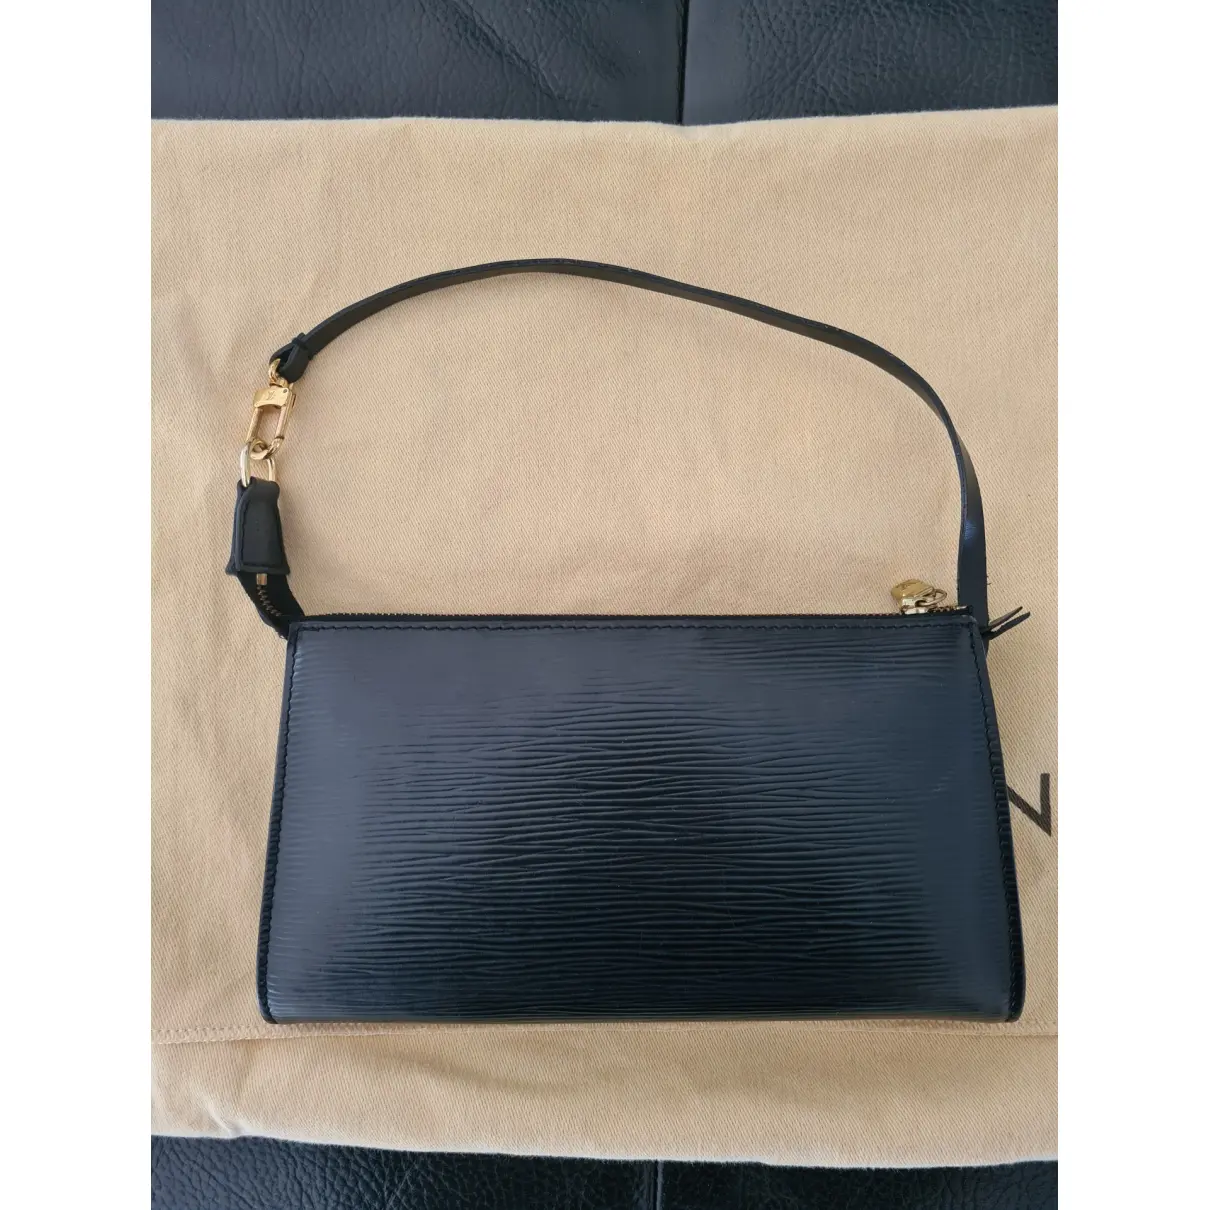 Buy Louis Vuitton Honfleur leather clutch bag online